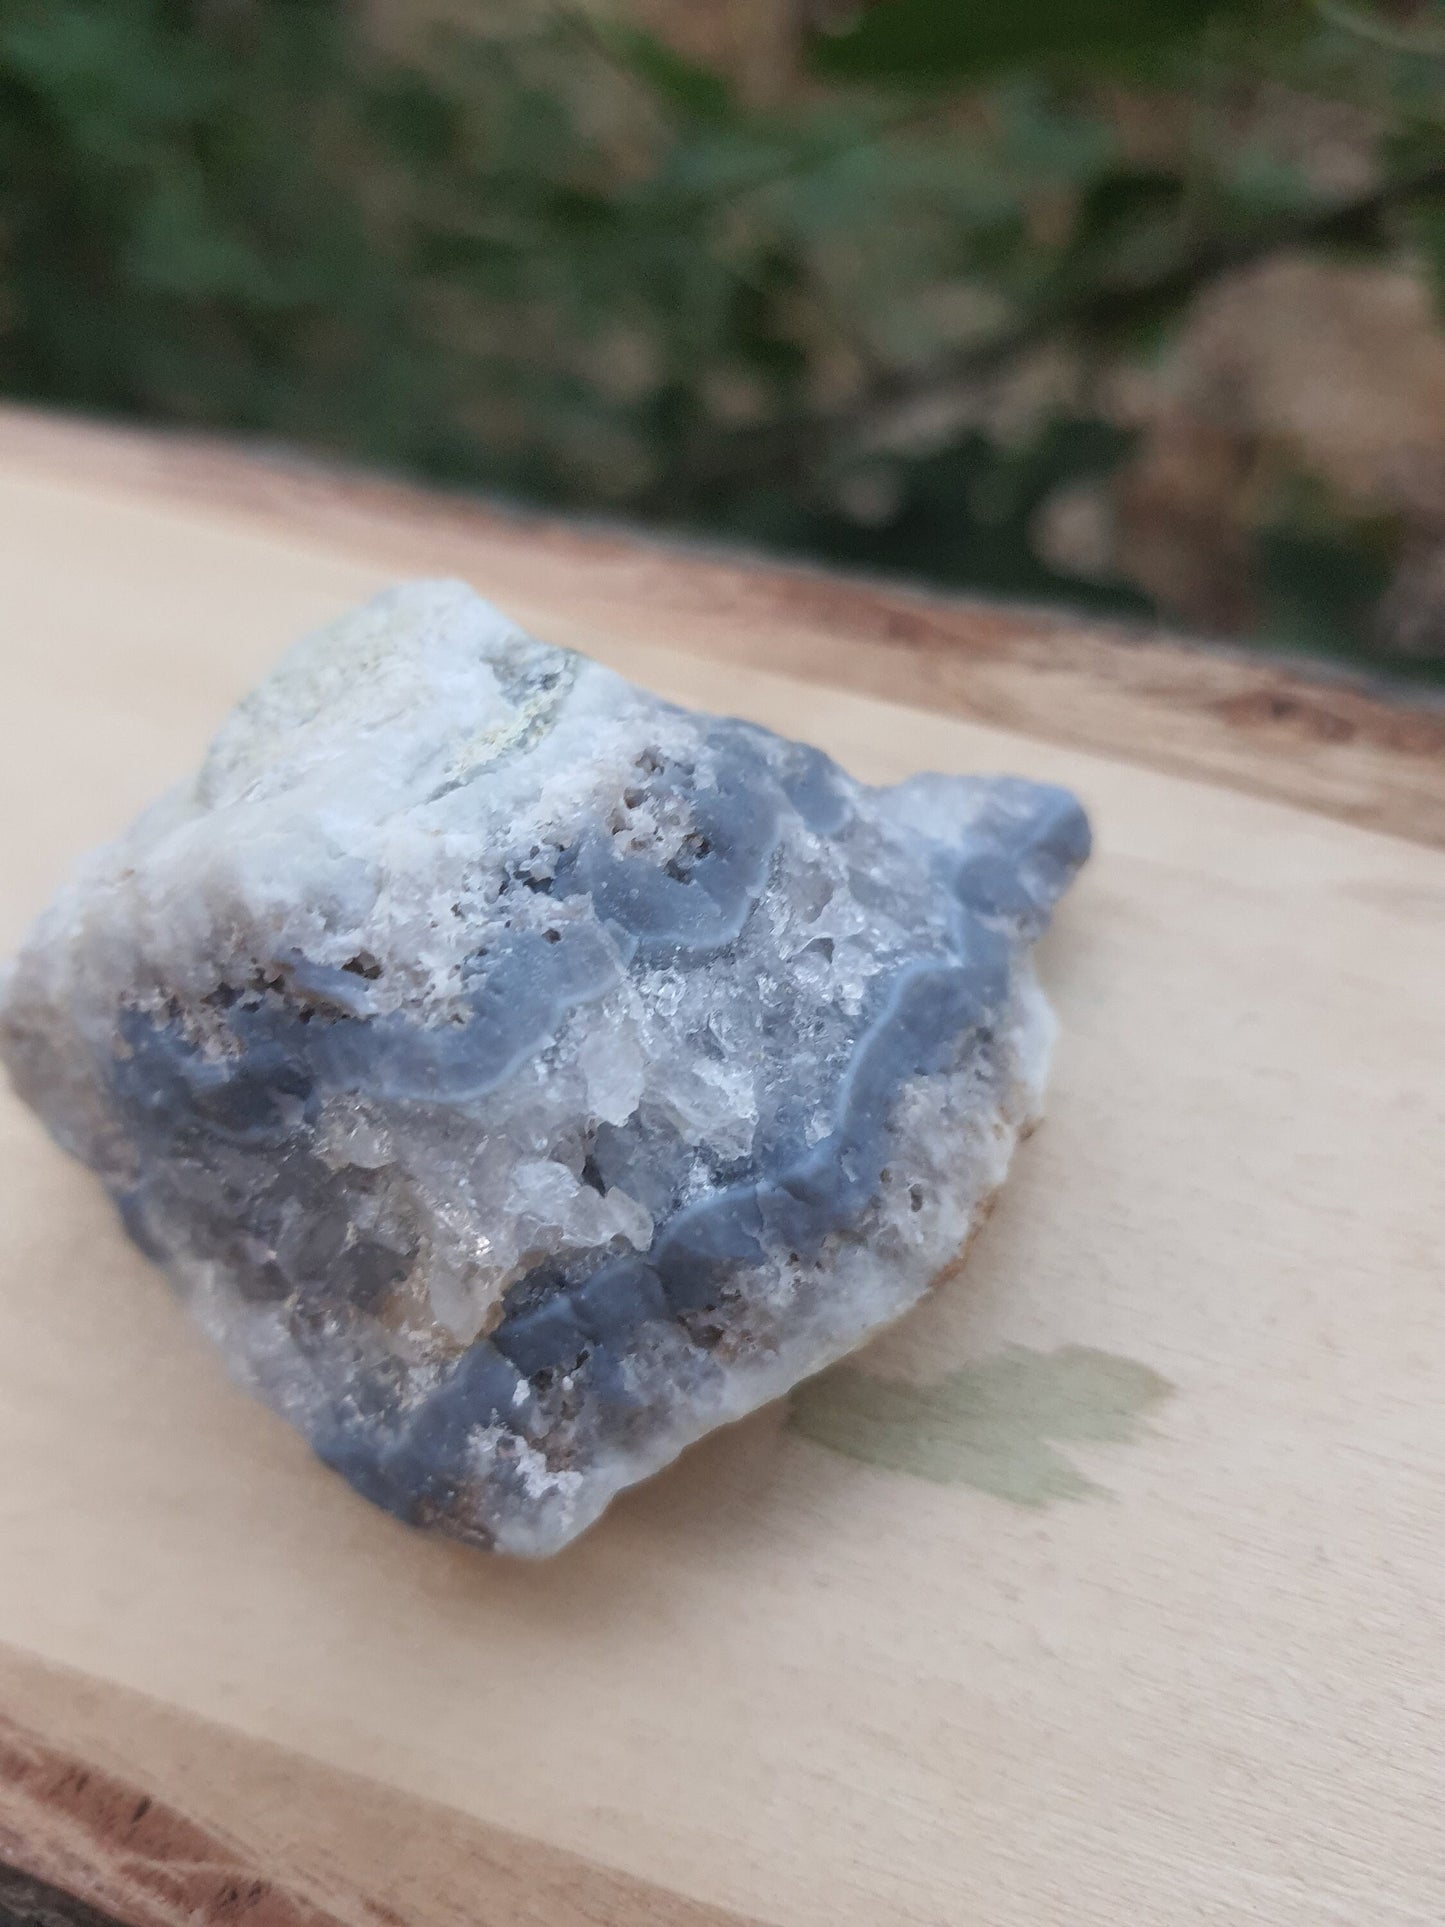 Blue Lace Agate Cluster, 82g Druzy Blue Lace Agate Geode, Sparkly blue Lace Agate, Blue Agate Crystal, Blue Lace Agate, Raw Crystal Cluster